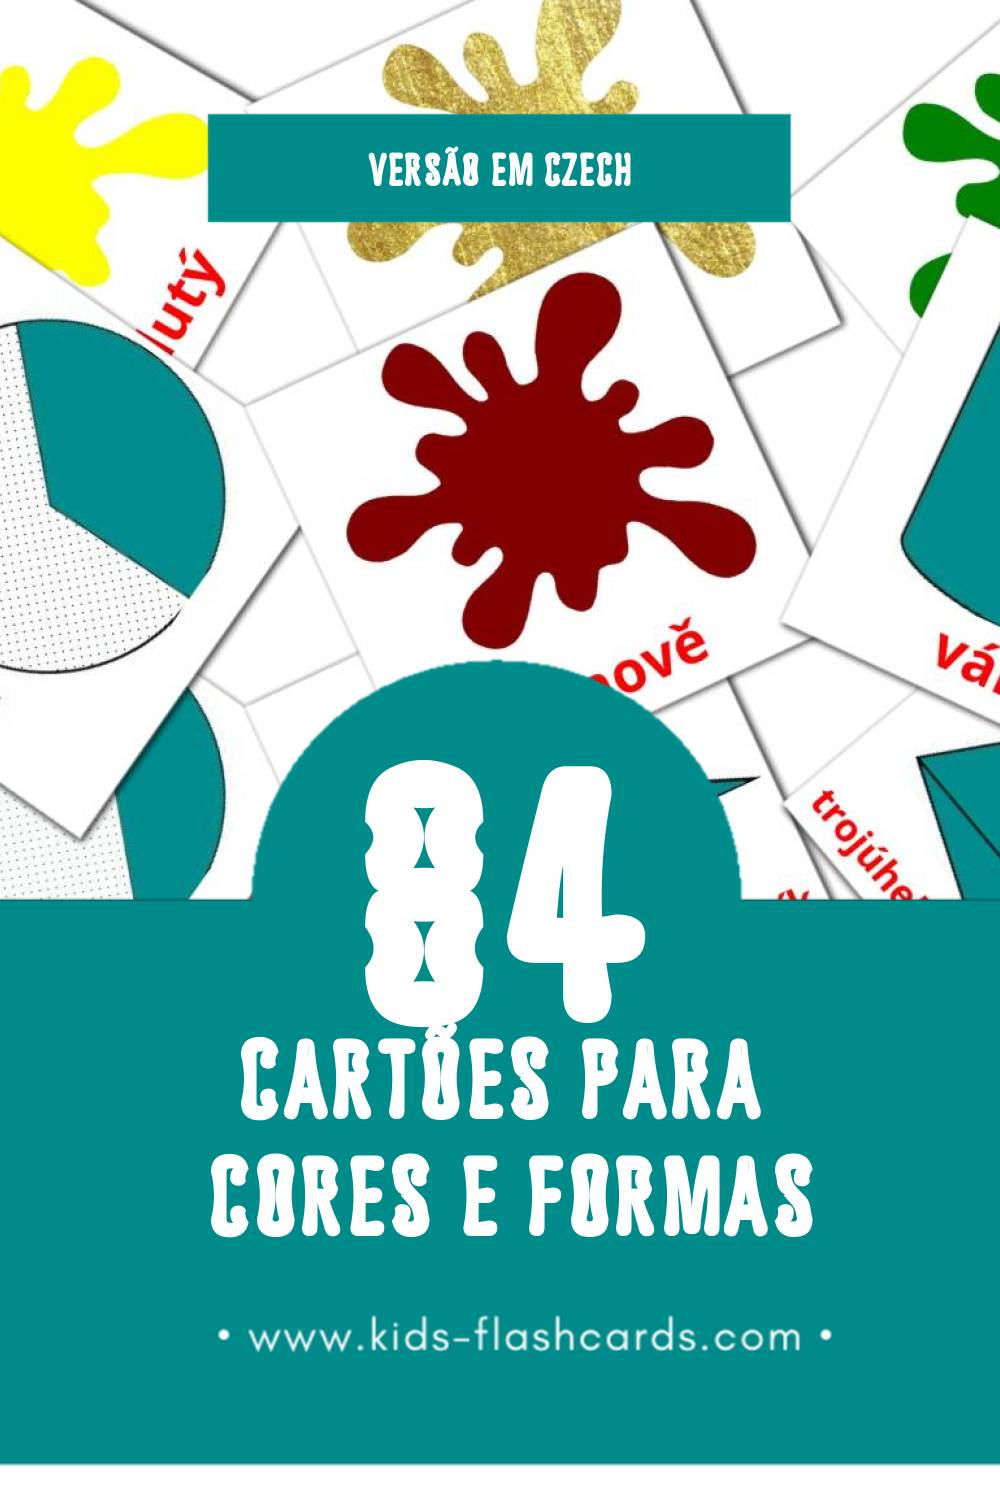 Flashcards de Barva a forma Visuais para Toddlers (84 cartões em Czech)